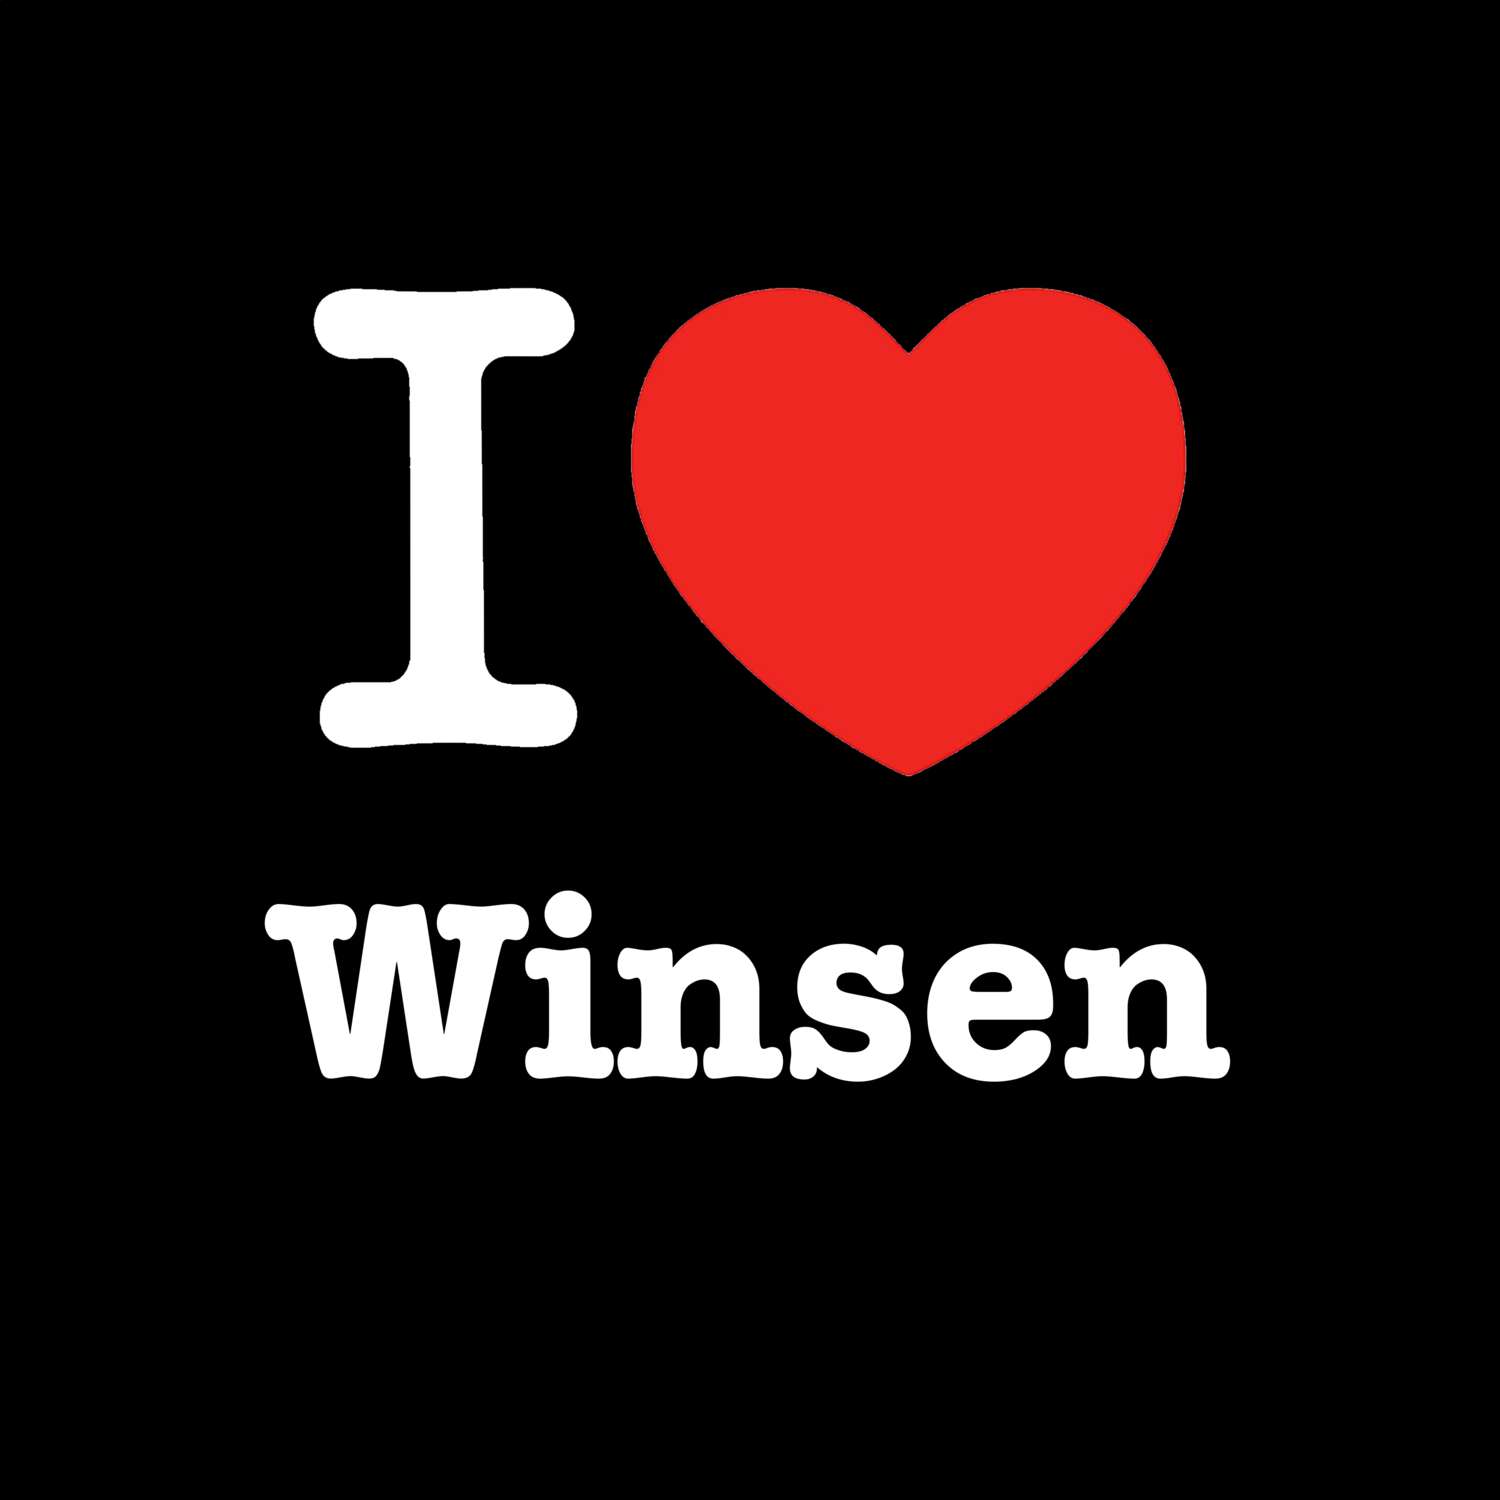 Winsen T-Shirt »I love«